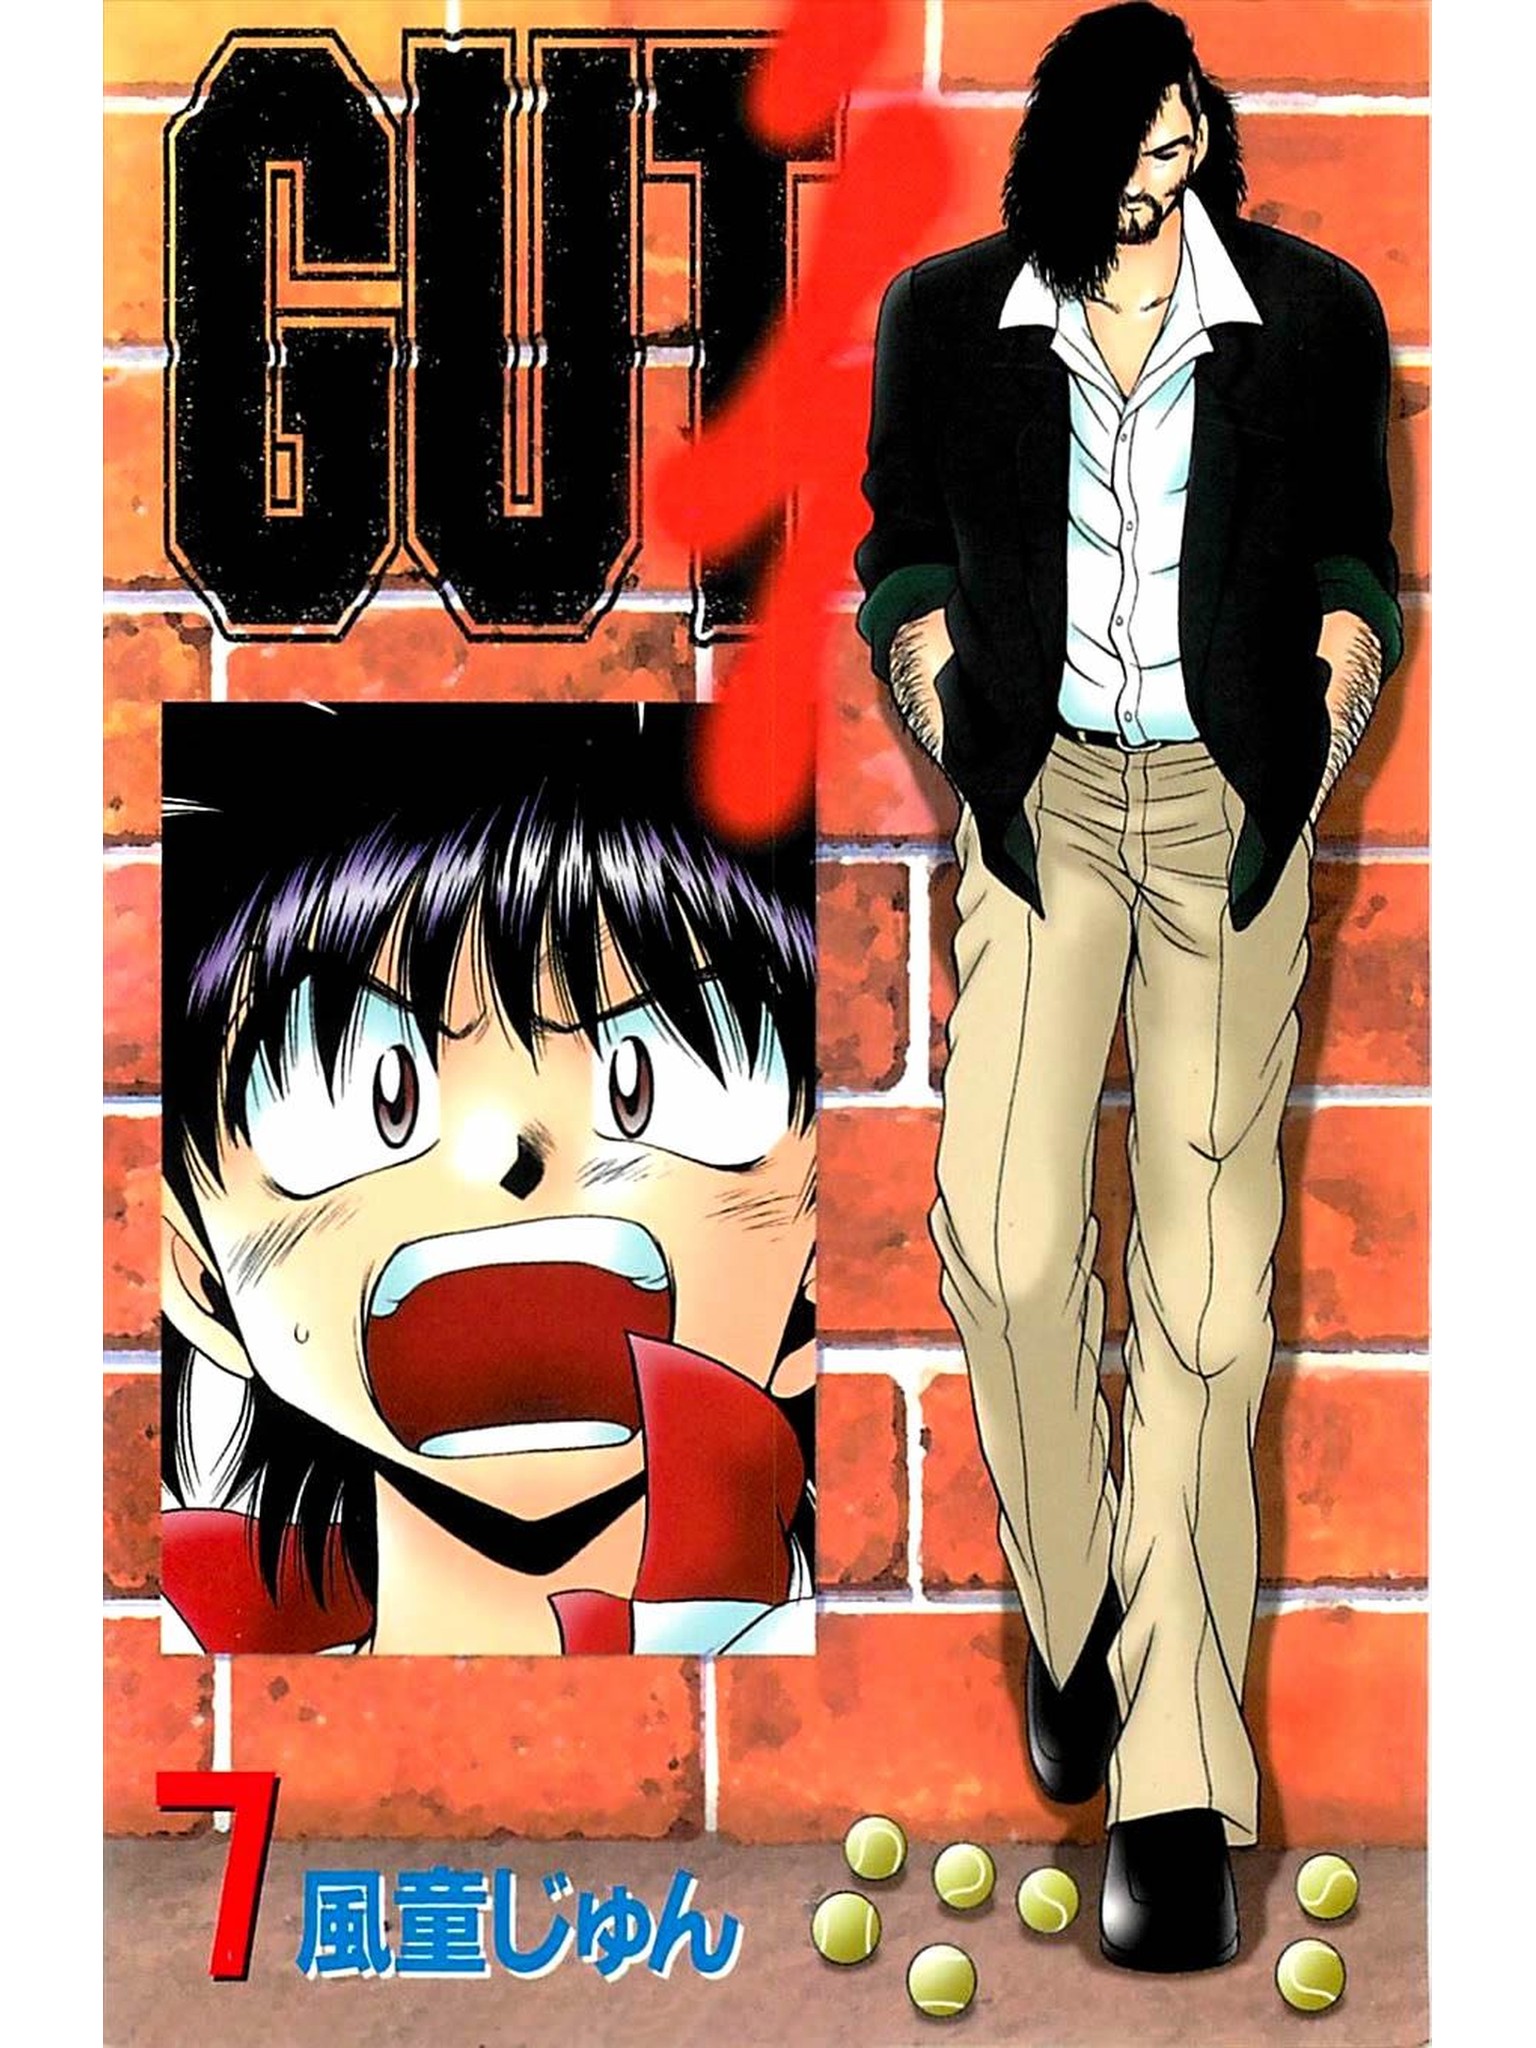 GUT's 7巻 - 風童じゅん - 少年マンガ・無料試し読みなら、電子書籍・コミックストア ブックライブ